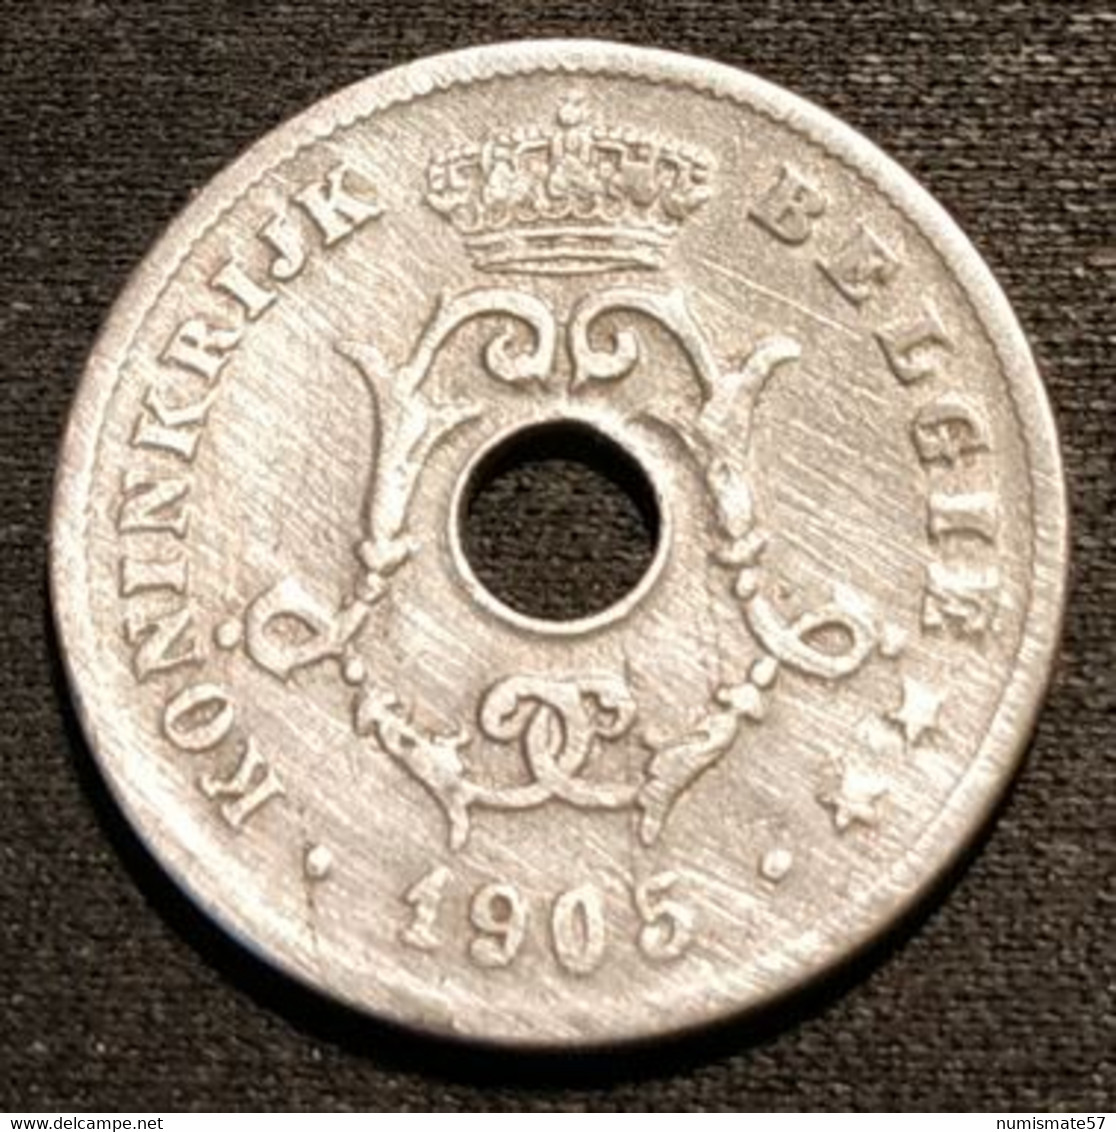 BELGIQUE - BELGIUM - 10 CENTIMES 1905 - Légende NL - Léopold II - Type Michaux - KM 53 - 10 Cents